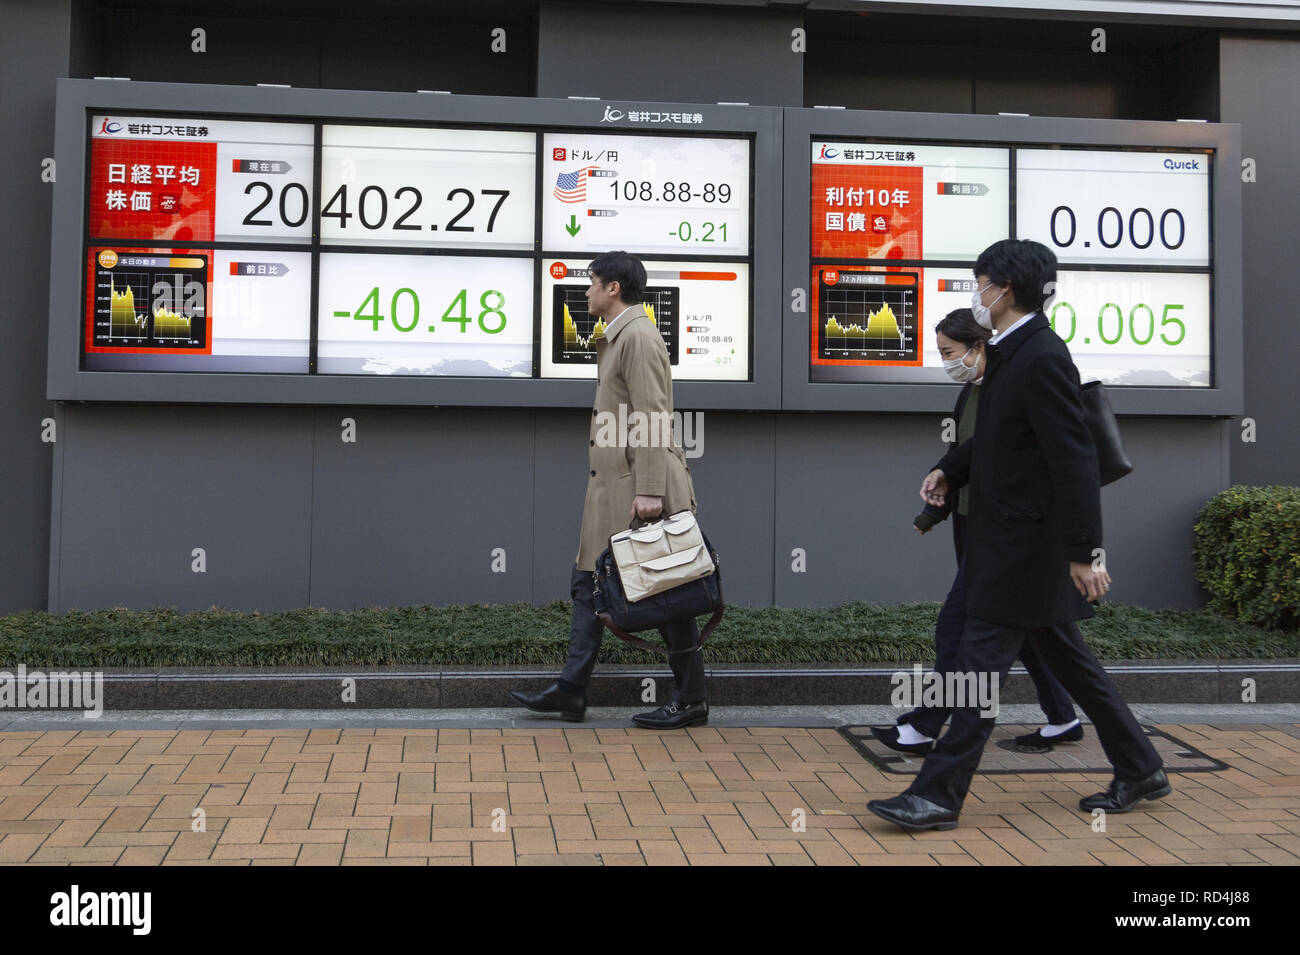 Enero 17, 2019 - Tokio, Japón - Los peatones camina más allá de un tablero electrónico de valores mostrando Japón el Nikkei Stock promedio, que terminó abajo 40.48 puntos o 0.20 por ciento para cerrar en 20,402.27. El más amplio Topix índice agregado 0,35 por ciento o 5,43 puntos hasta situarse en 1,543.20. (Crédito de la Imagen: © Rodrigo Reyes Marin/ZUMA Wire) Foto de stock